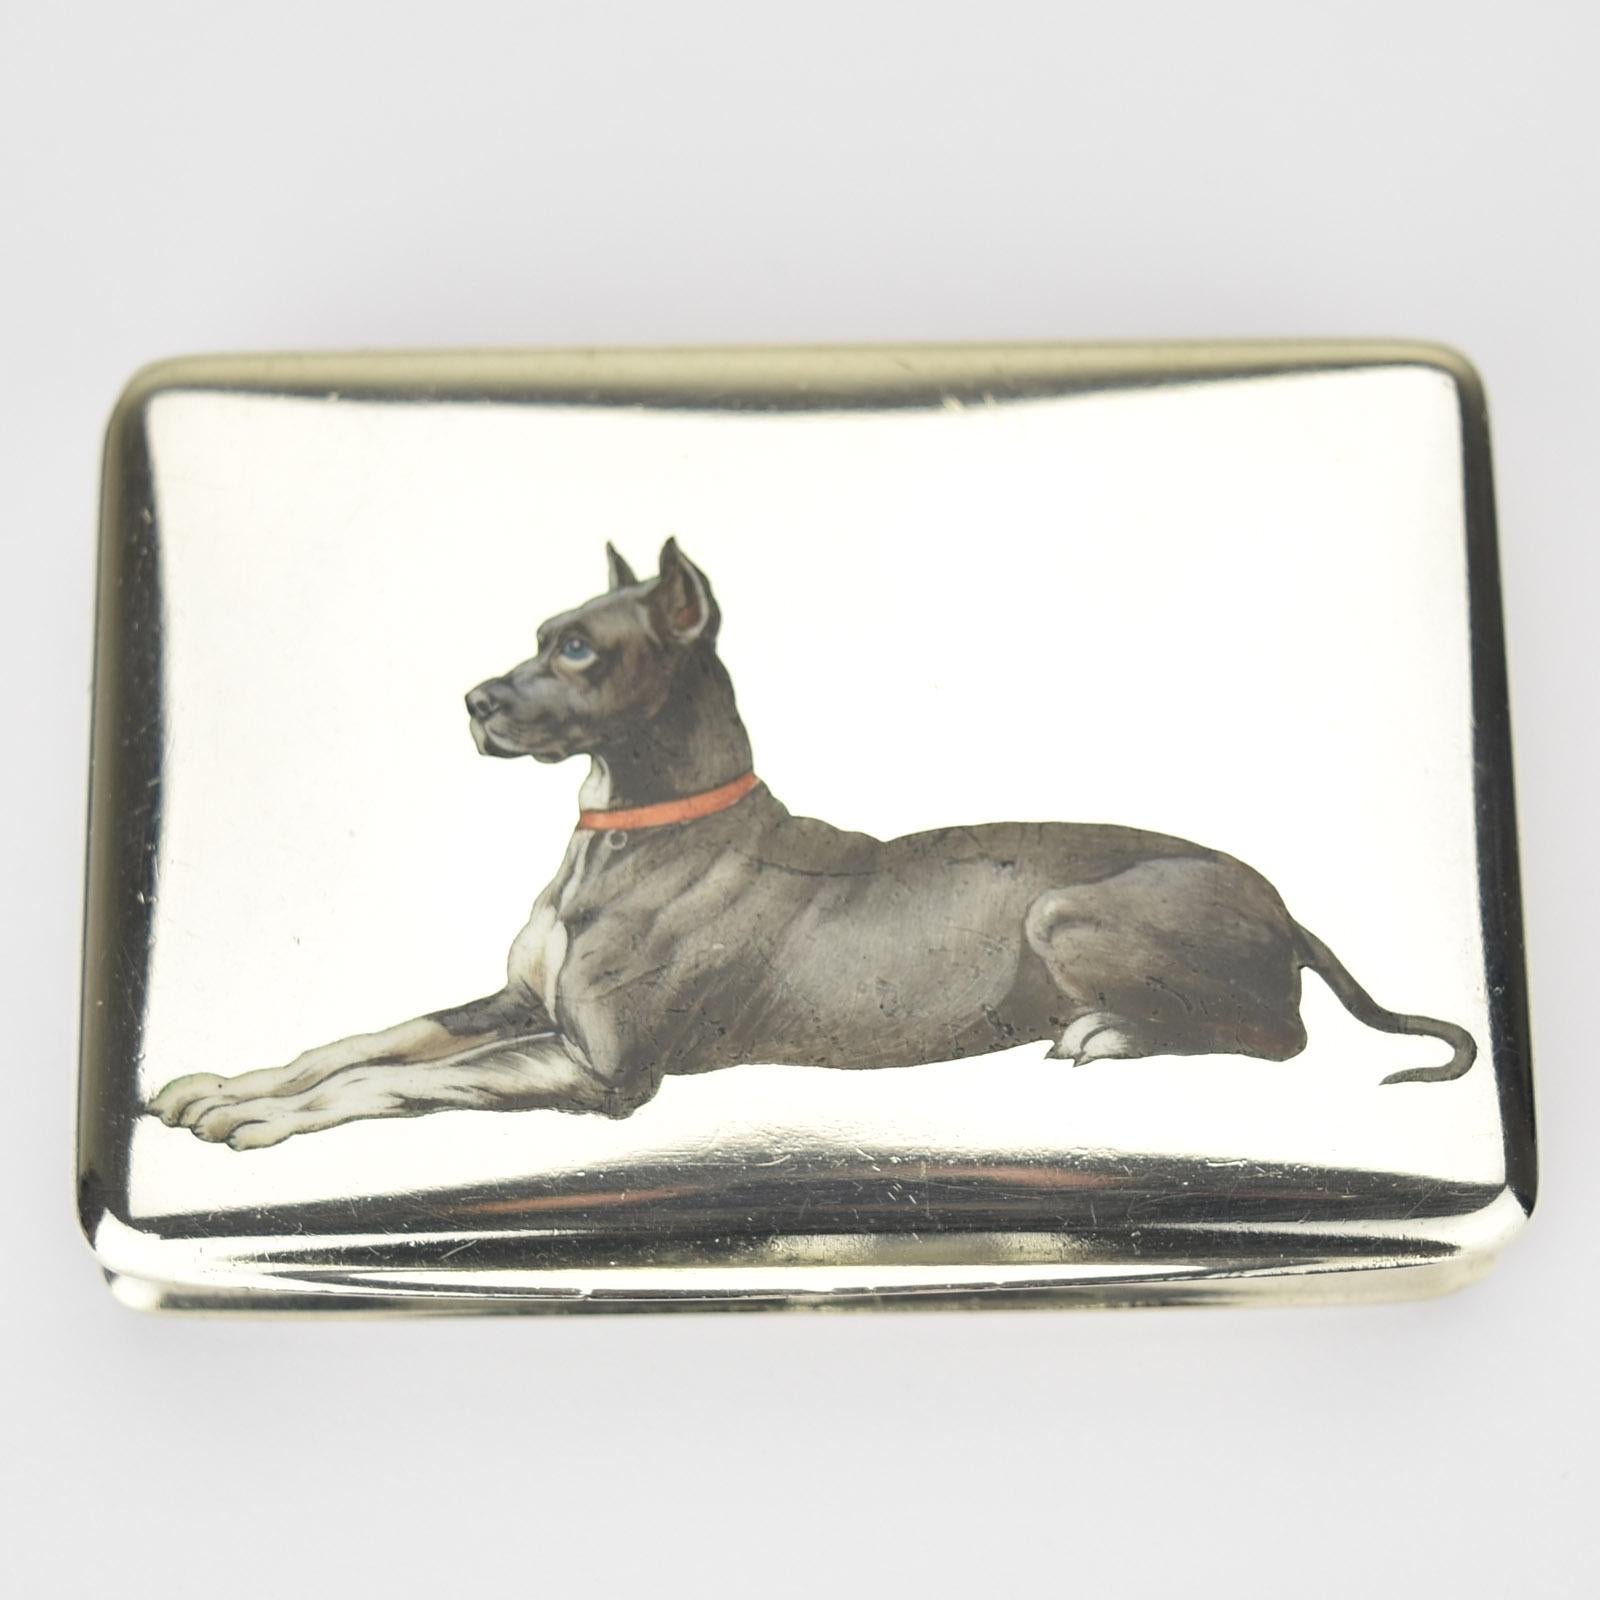 Belle tabatière ou boîte à pilules naturaliste en émail peint à la main représentant un chien dogue allemand, probablement fabriquée autour de 1900 en Autriche. La boîte est en argent 0.800 avec intérieur en vermeil.

Dimensions : environ